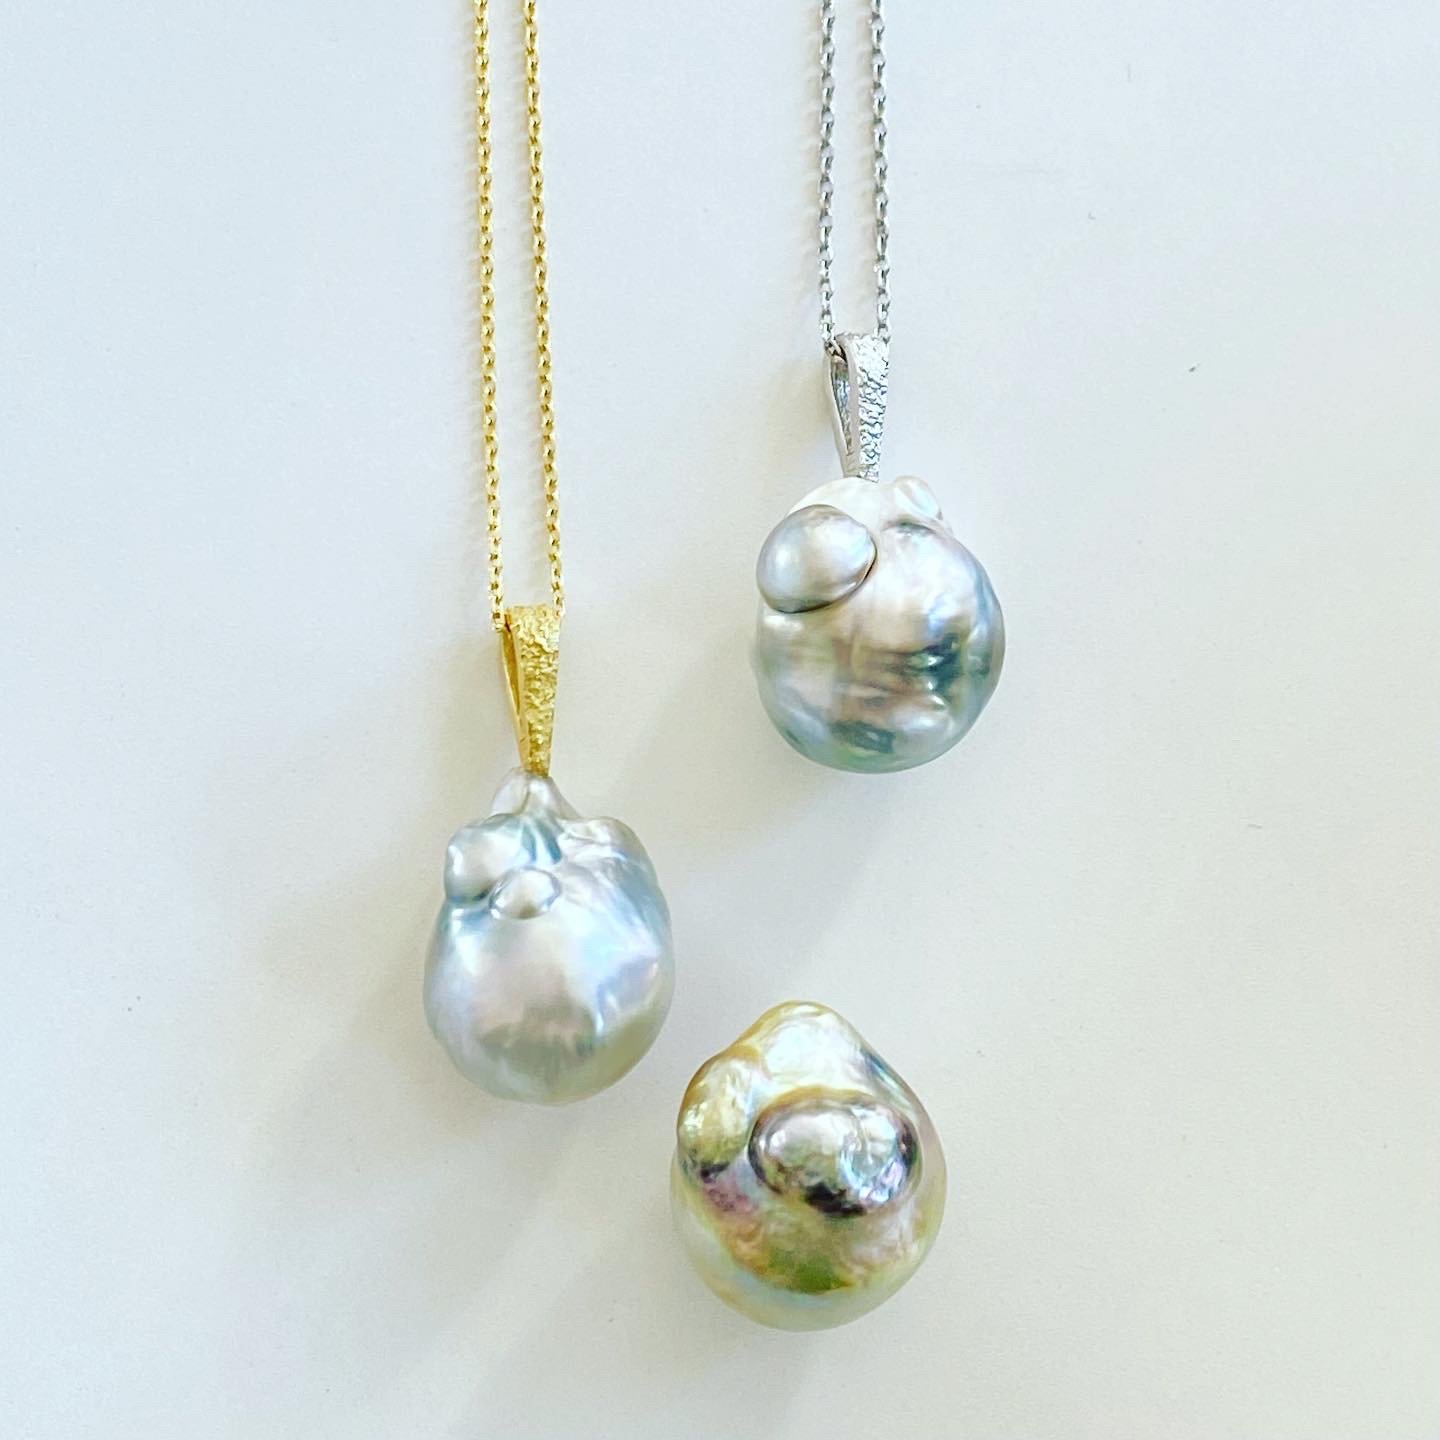 Pearl pearls pearls